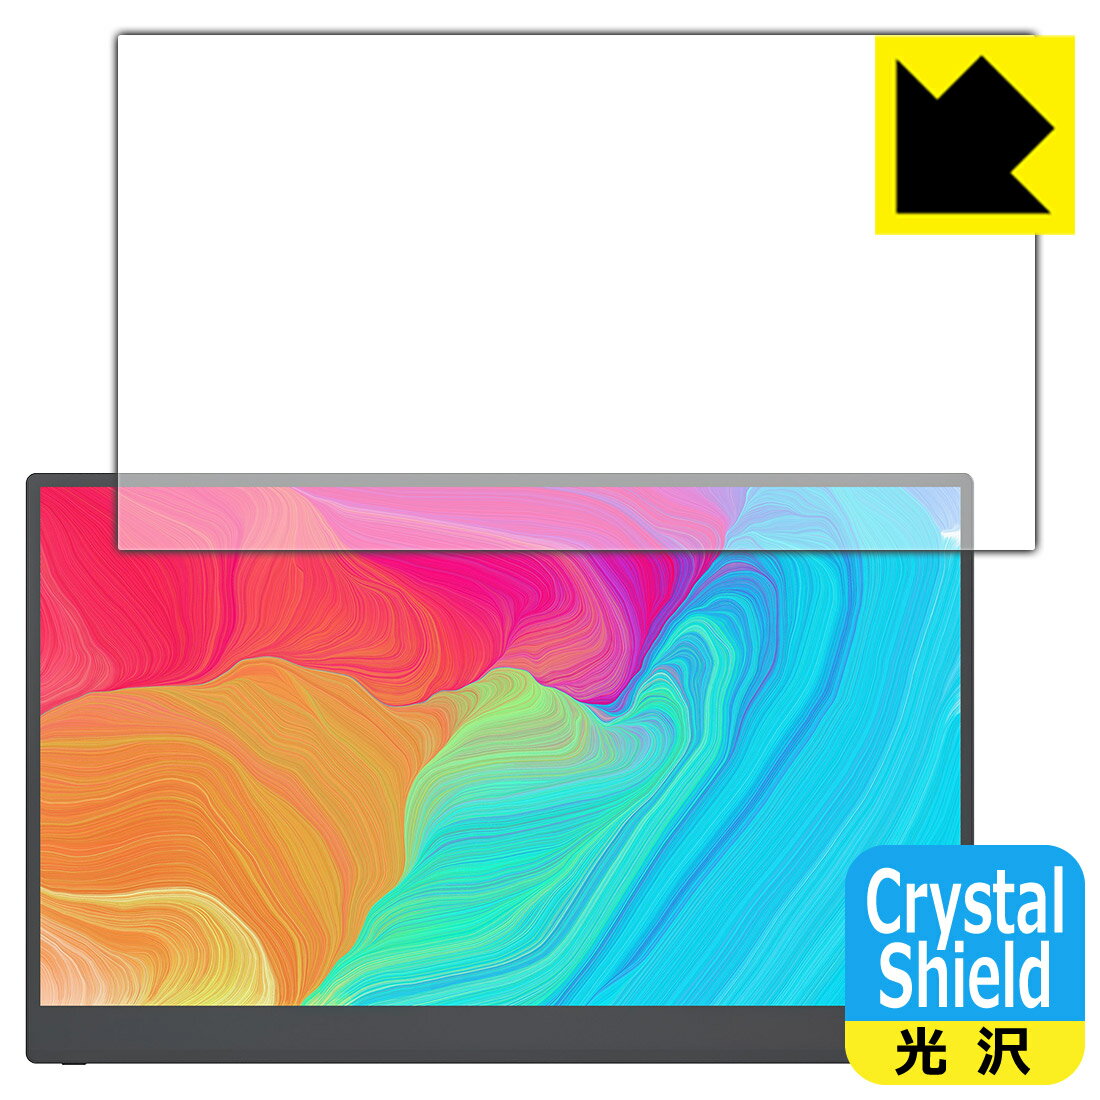 Crystal Shield【光沢】保護フィルム kksmart 15.6インチ モバイルモニター C-1 / CT-1 日本製 自社製造直販